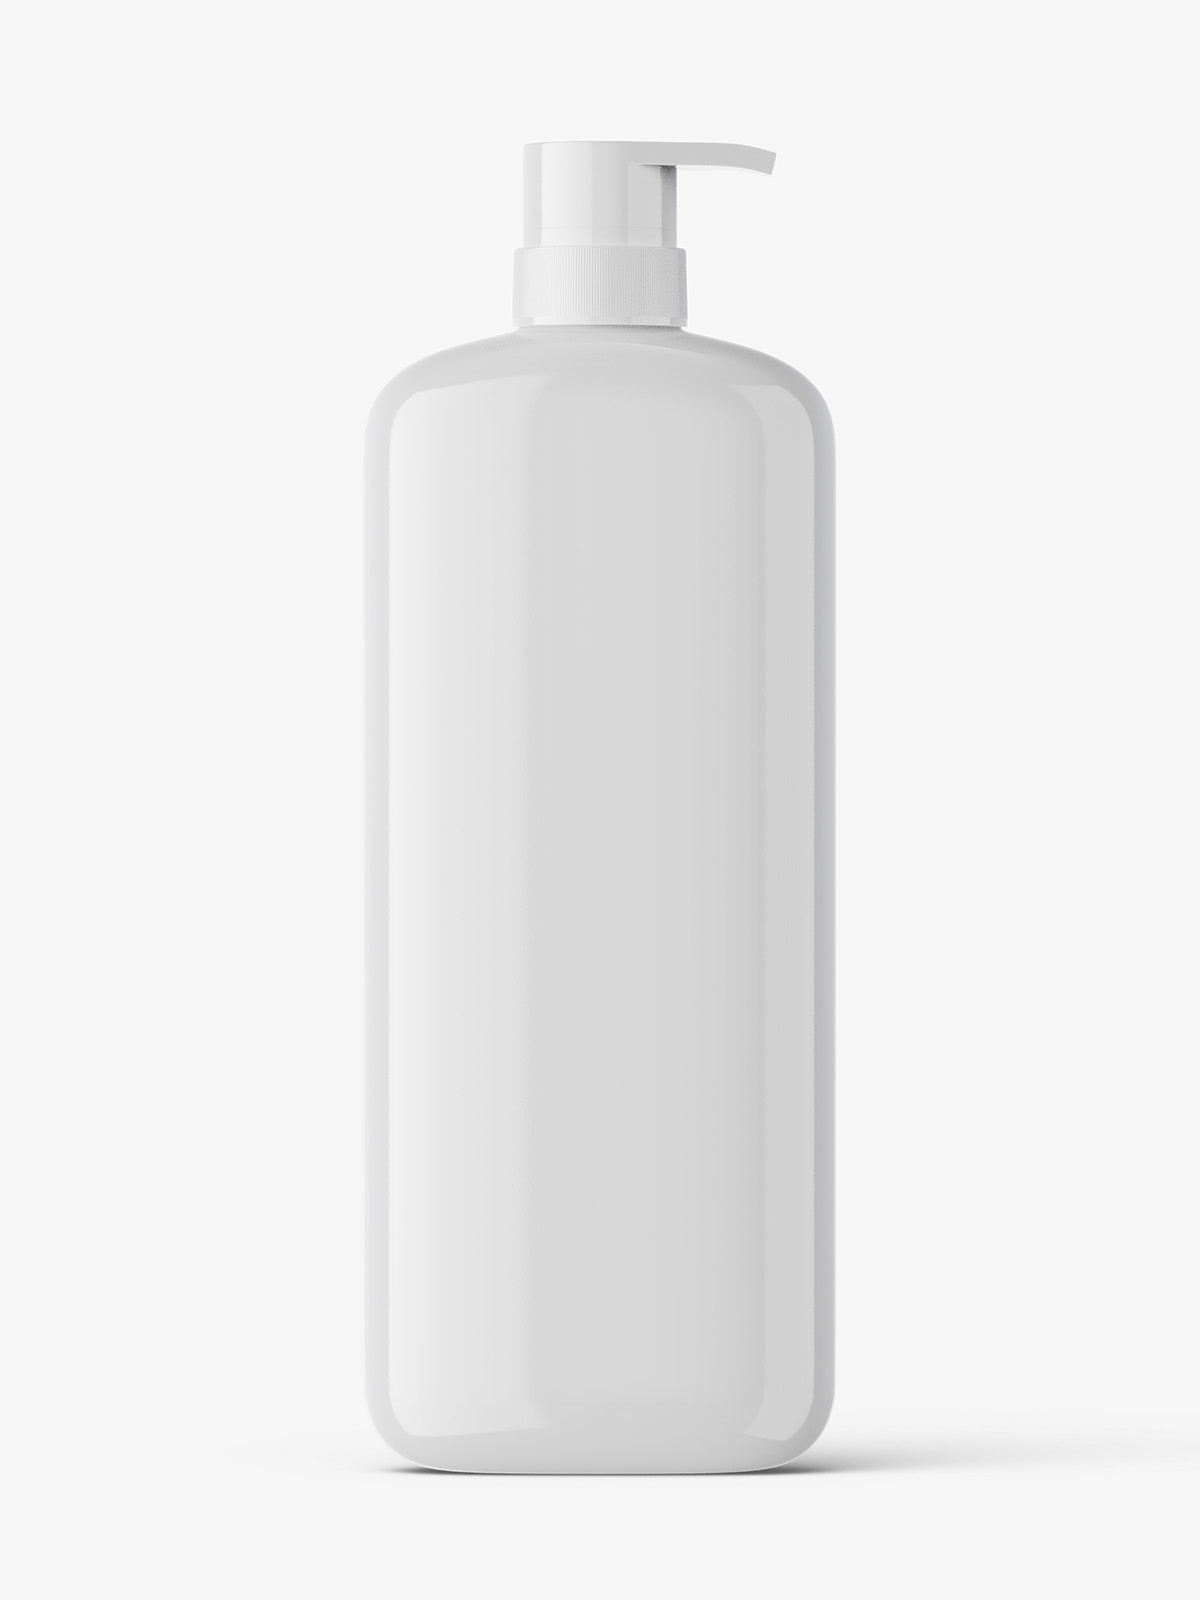 Download Shampoo Bottle Mockup Smarty Mockups